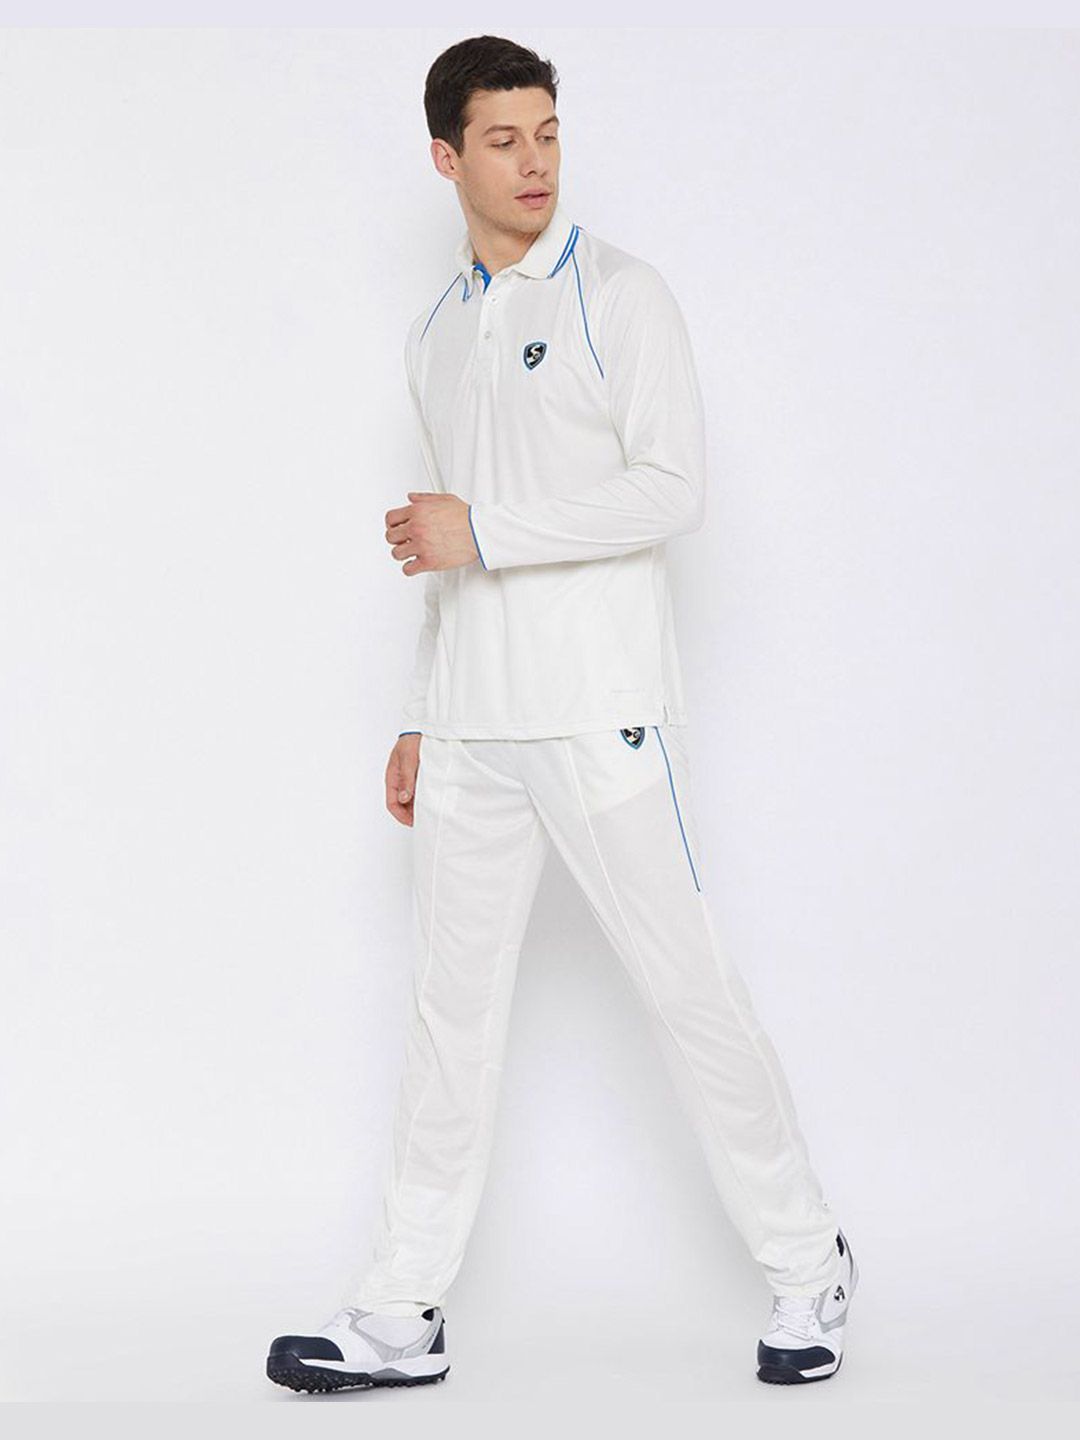 Buy RNS Premium White Half Sleeve Cricket TShirt Online  Sportskhelcom